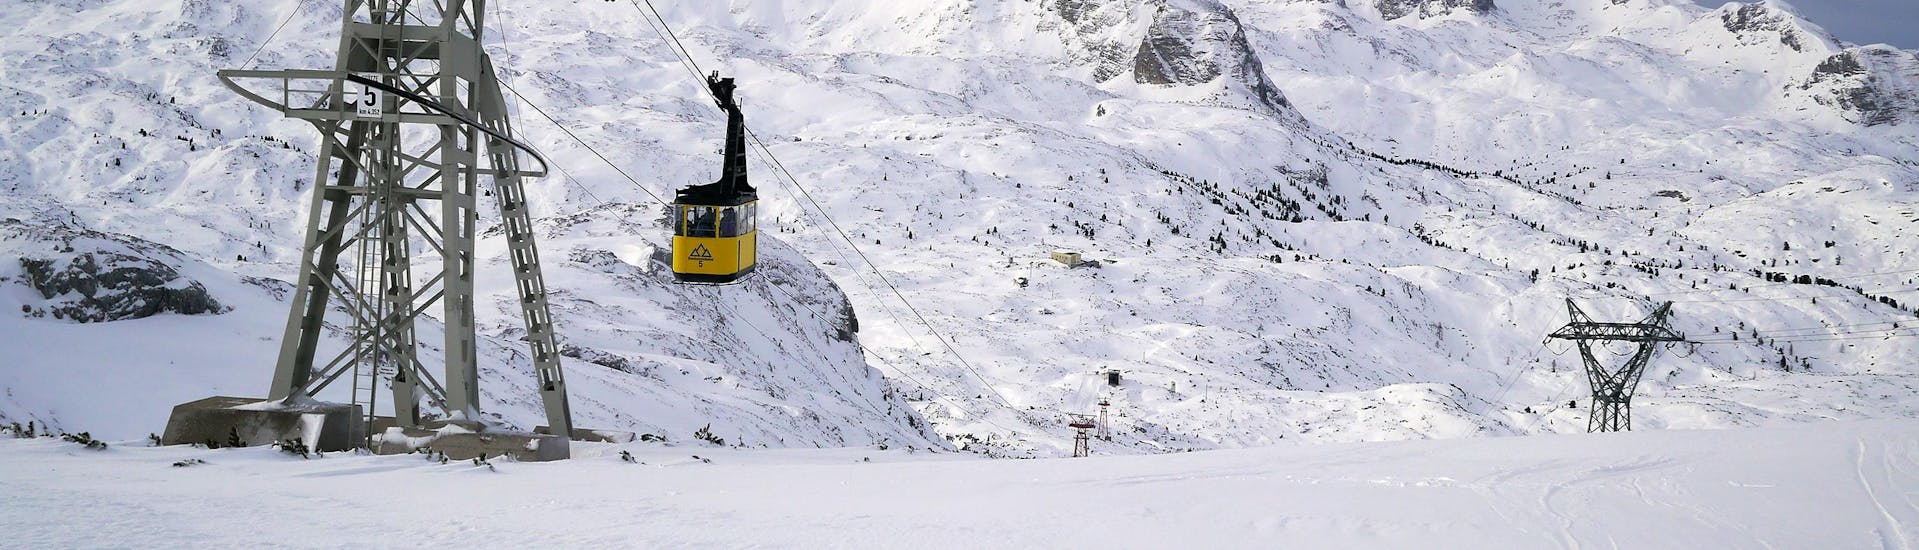 Blick auf die Gondel im verschneiten Skigebiet Dachstein Krippenstein, wo örtliche Skischulen ihre Skikurse anbieten.